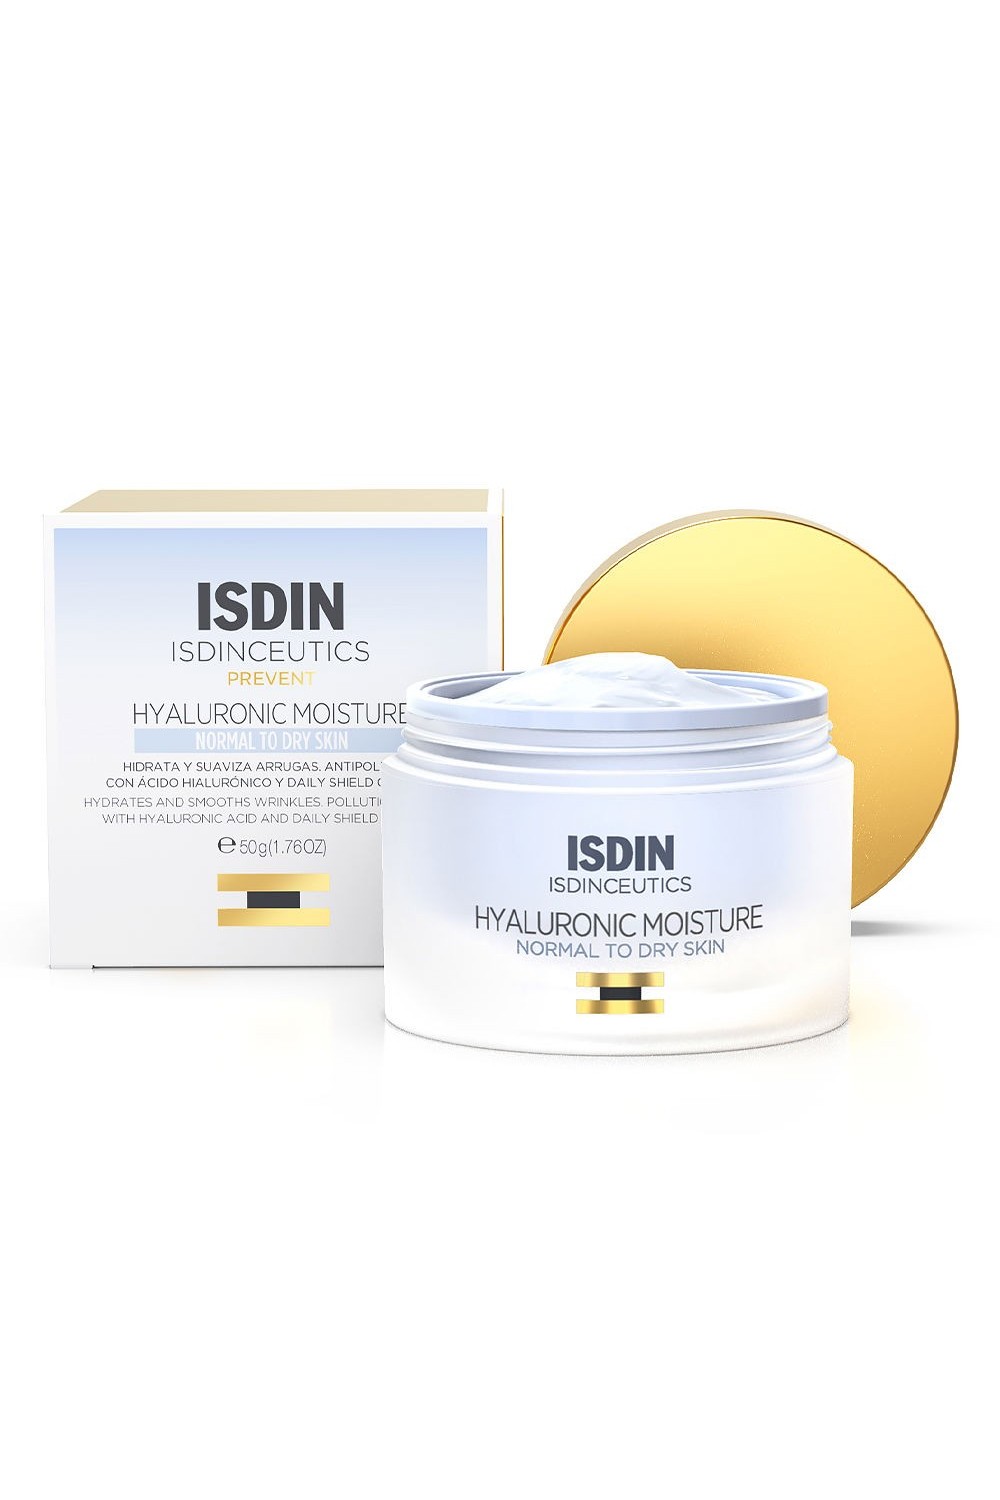 Isdin Isdinceutics Hyaluronic Moisture Normal-Dry Skin 50 g